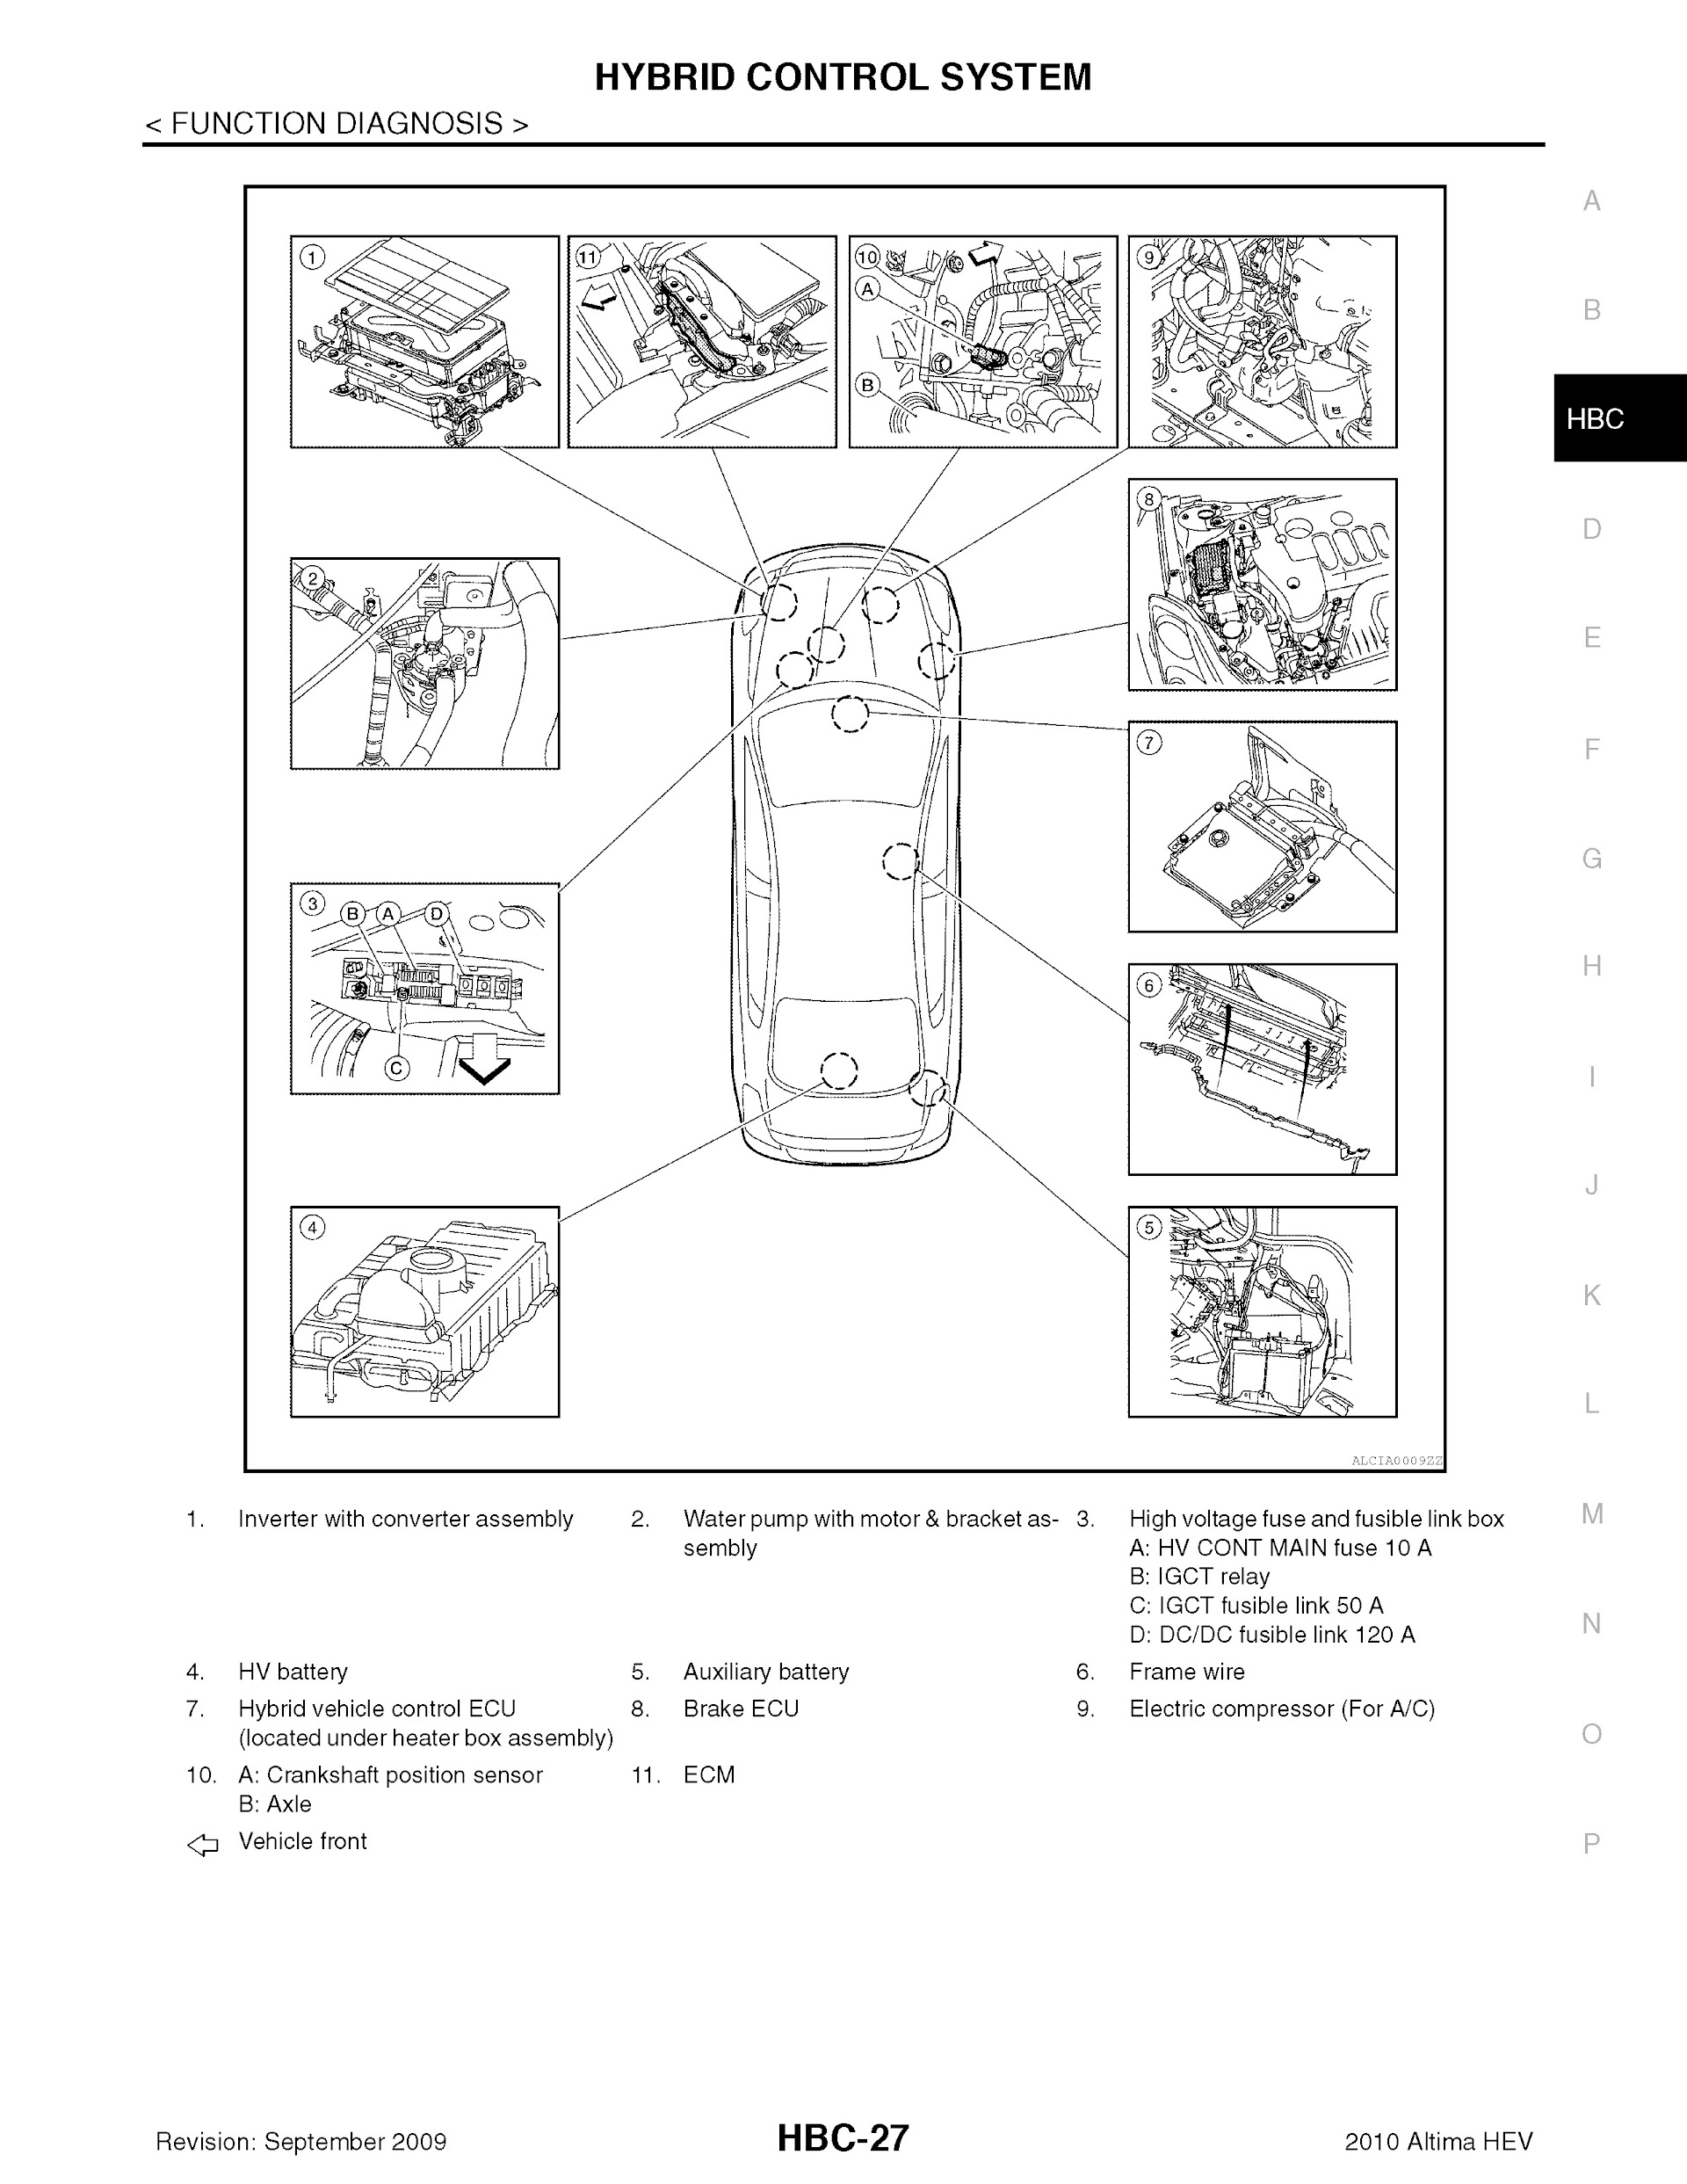 2010 Nissan Altima Hybrid Repair Manual